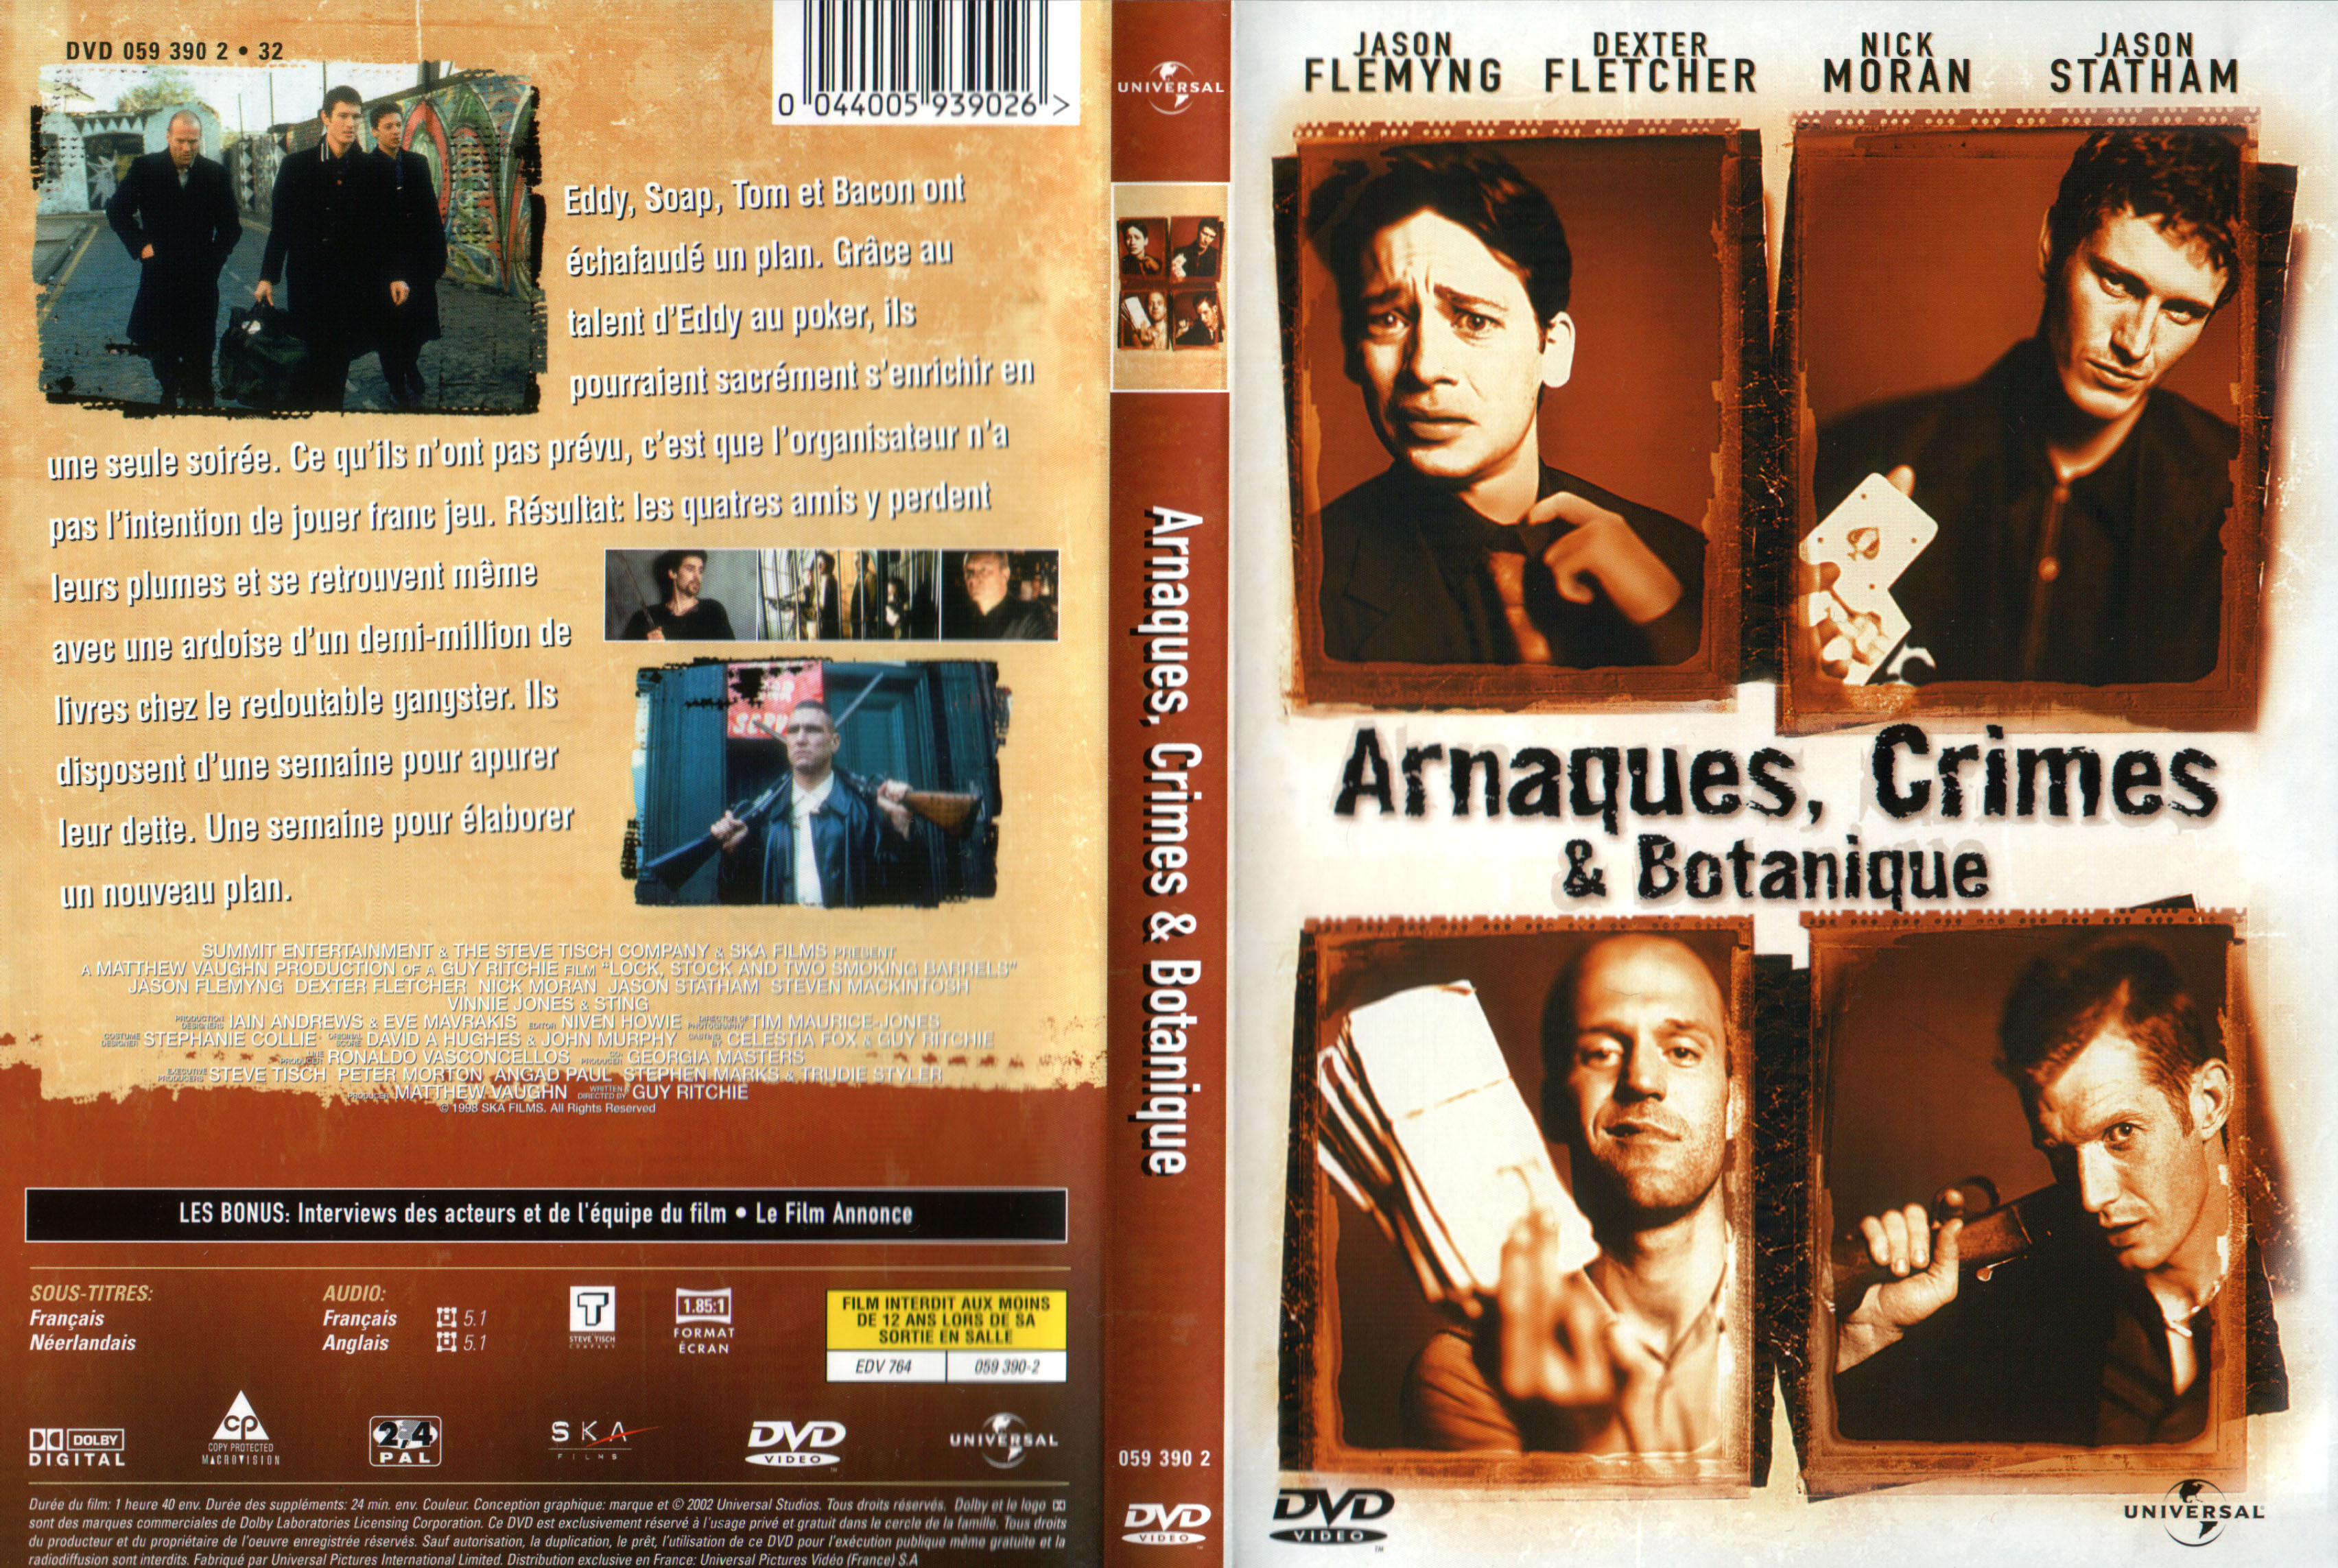 Jaquette DVD Arnaques Crimes et Botanique